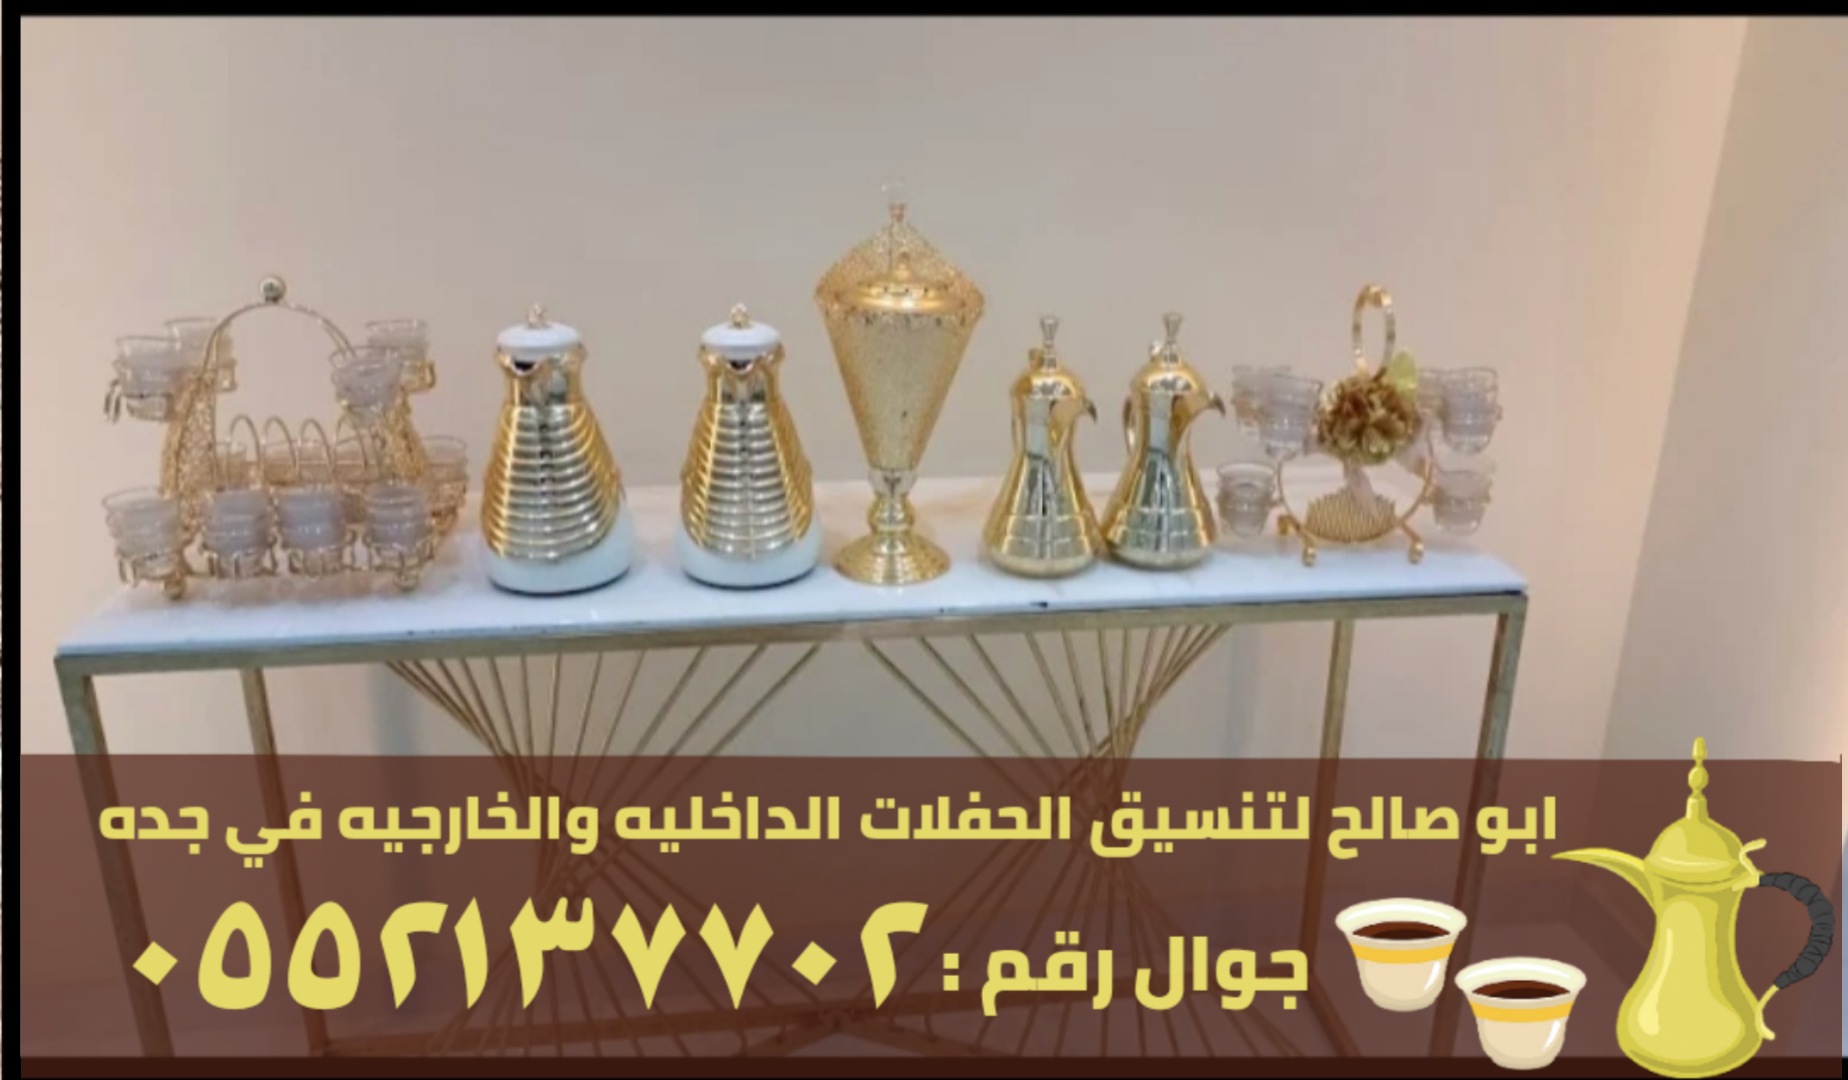 صبابين قهوة في جدة و صبابات قهوه , 0552137702 P_2371s913d3